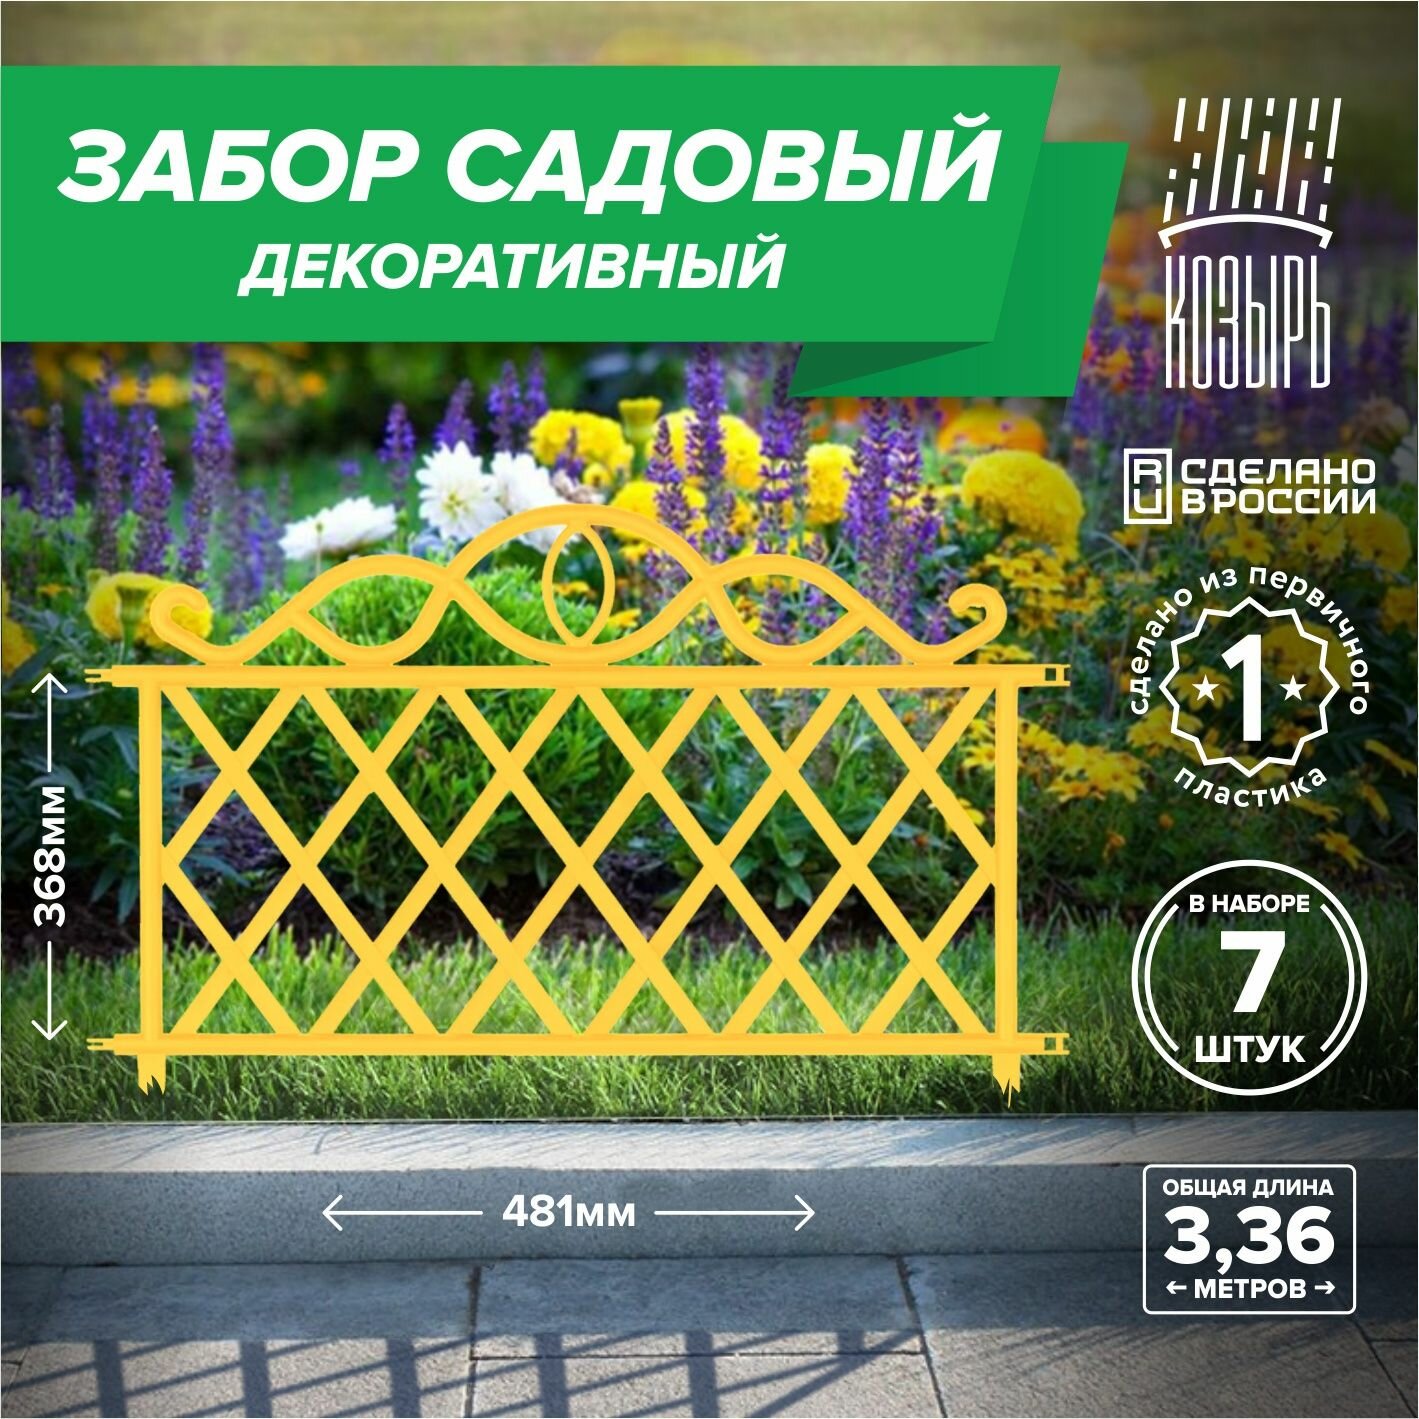 Декоративный садовый забор 48,1см х 7 шт, общая длина: 3,367 м, ограждение для цветника и клумбы, для дачи и сада желтый, Россия